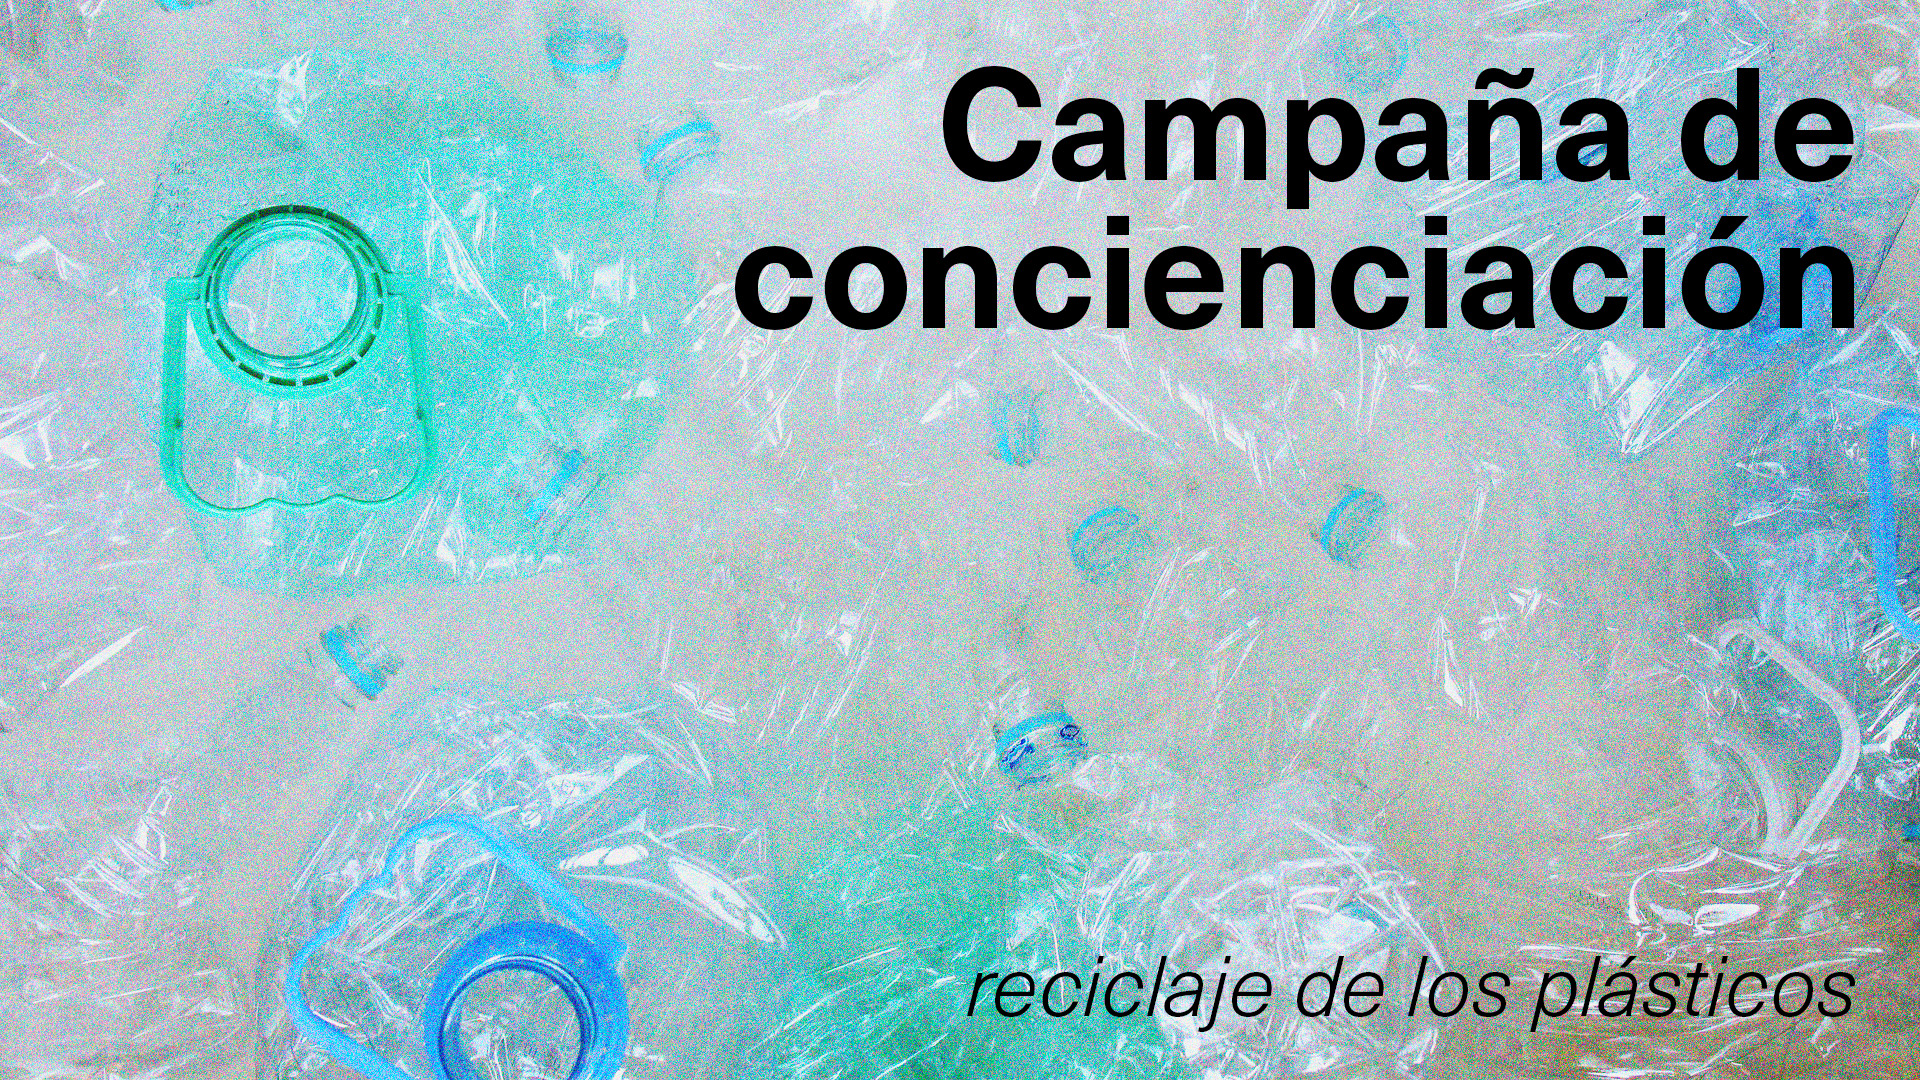 Campaña de concienciación del reciclaje de los plásticos